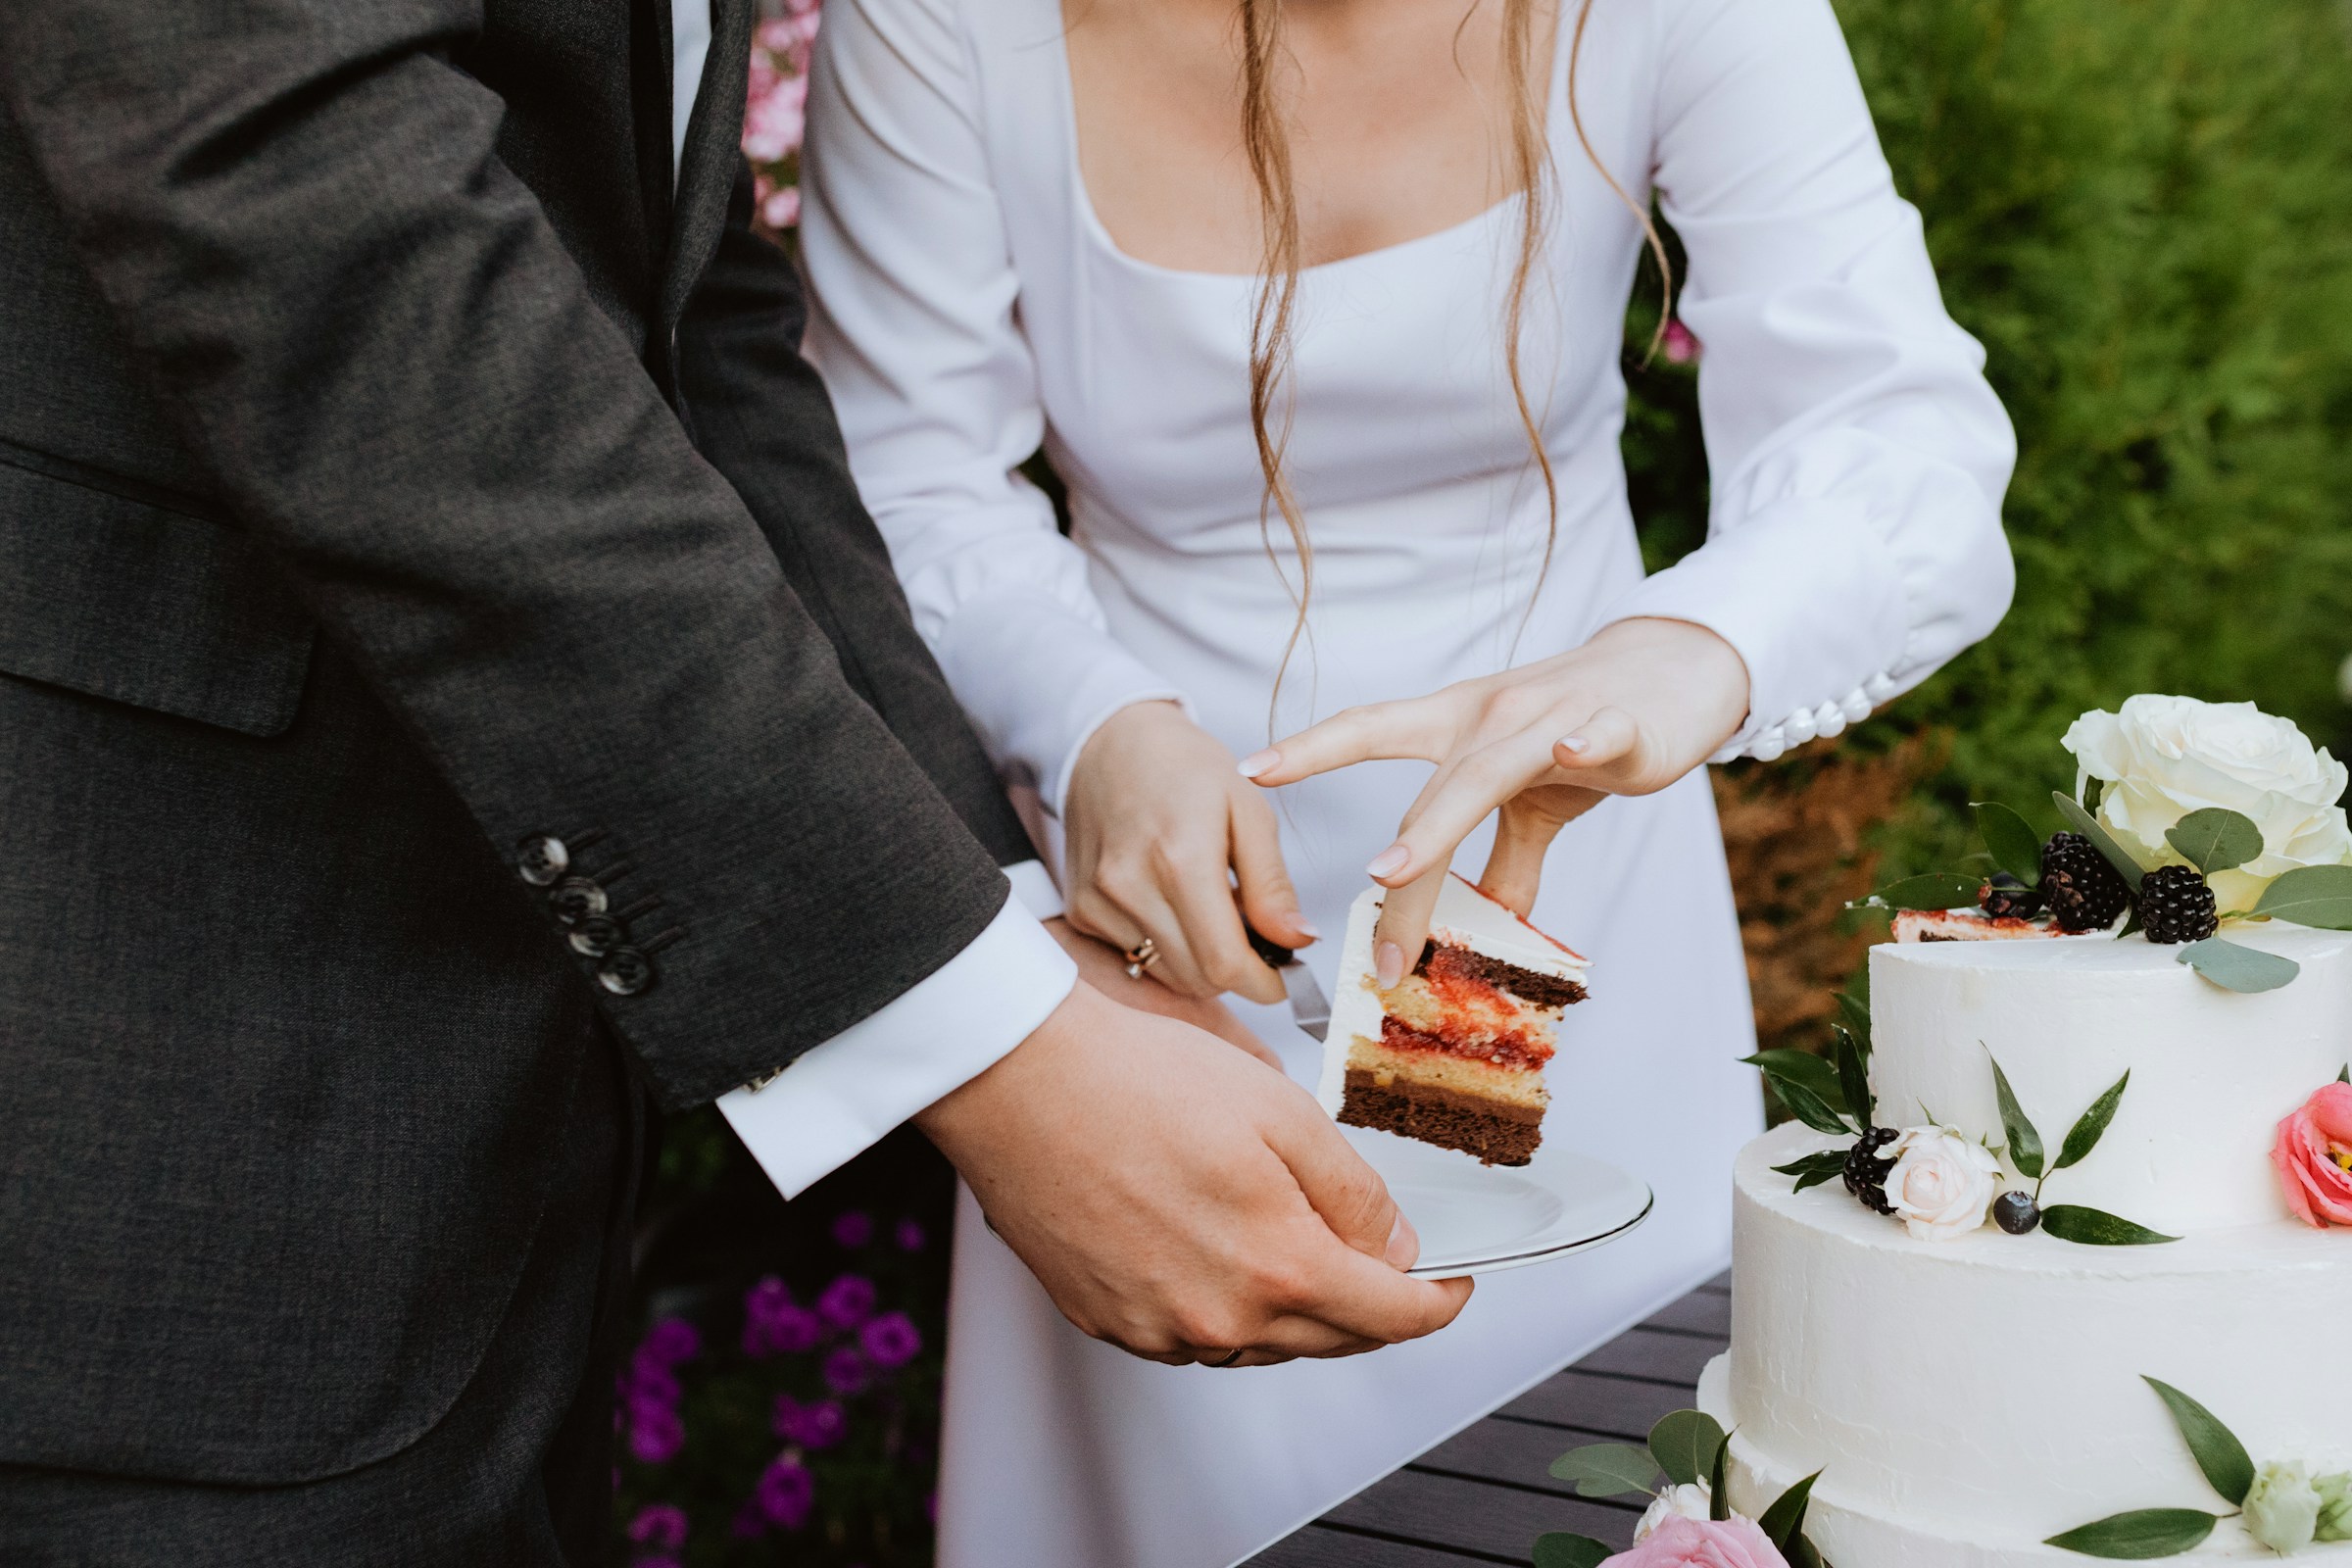 Una pareja cortando su Pastel de boda | Fuente: Unsplash